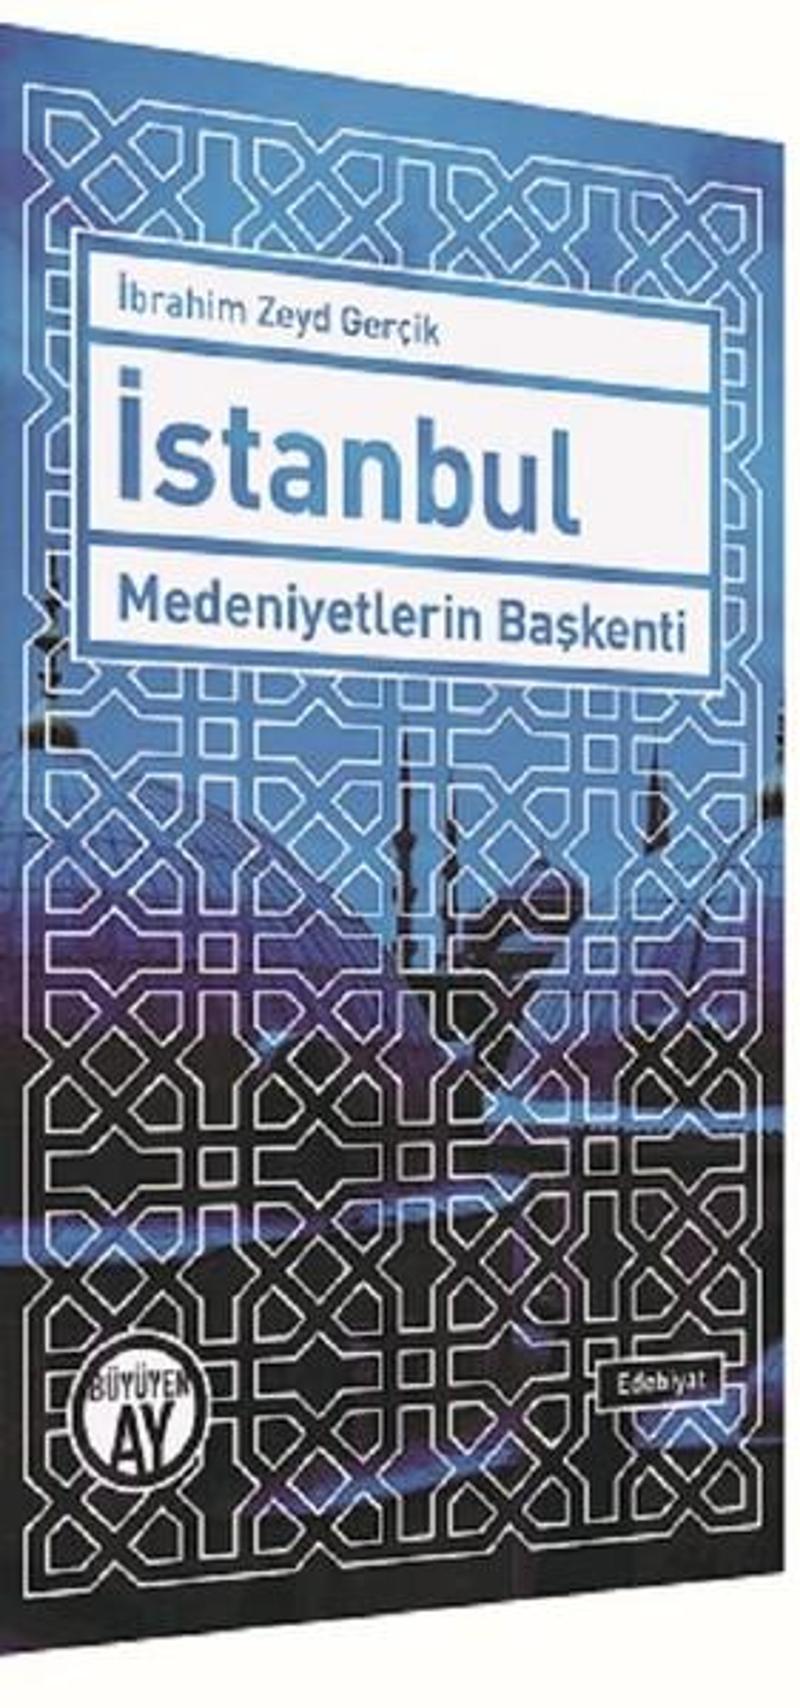 Büyüyenay Yayınları İstanbul Medeniyetlerin Başkenti - İbrahim Zeyd Gerçik